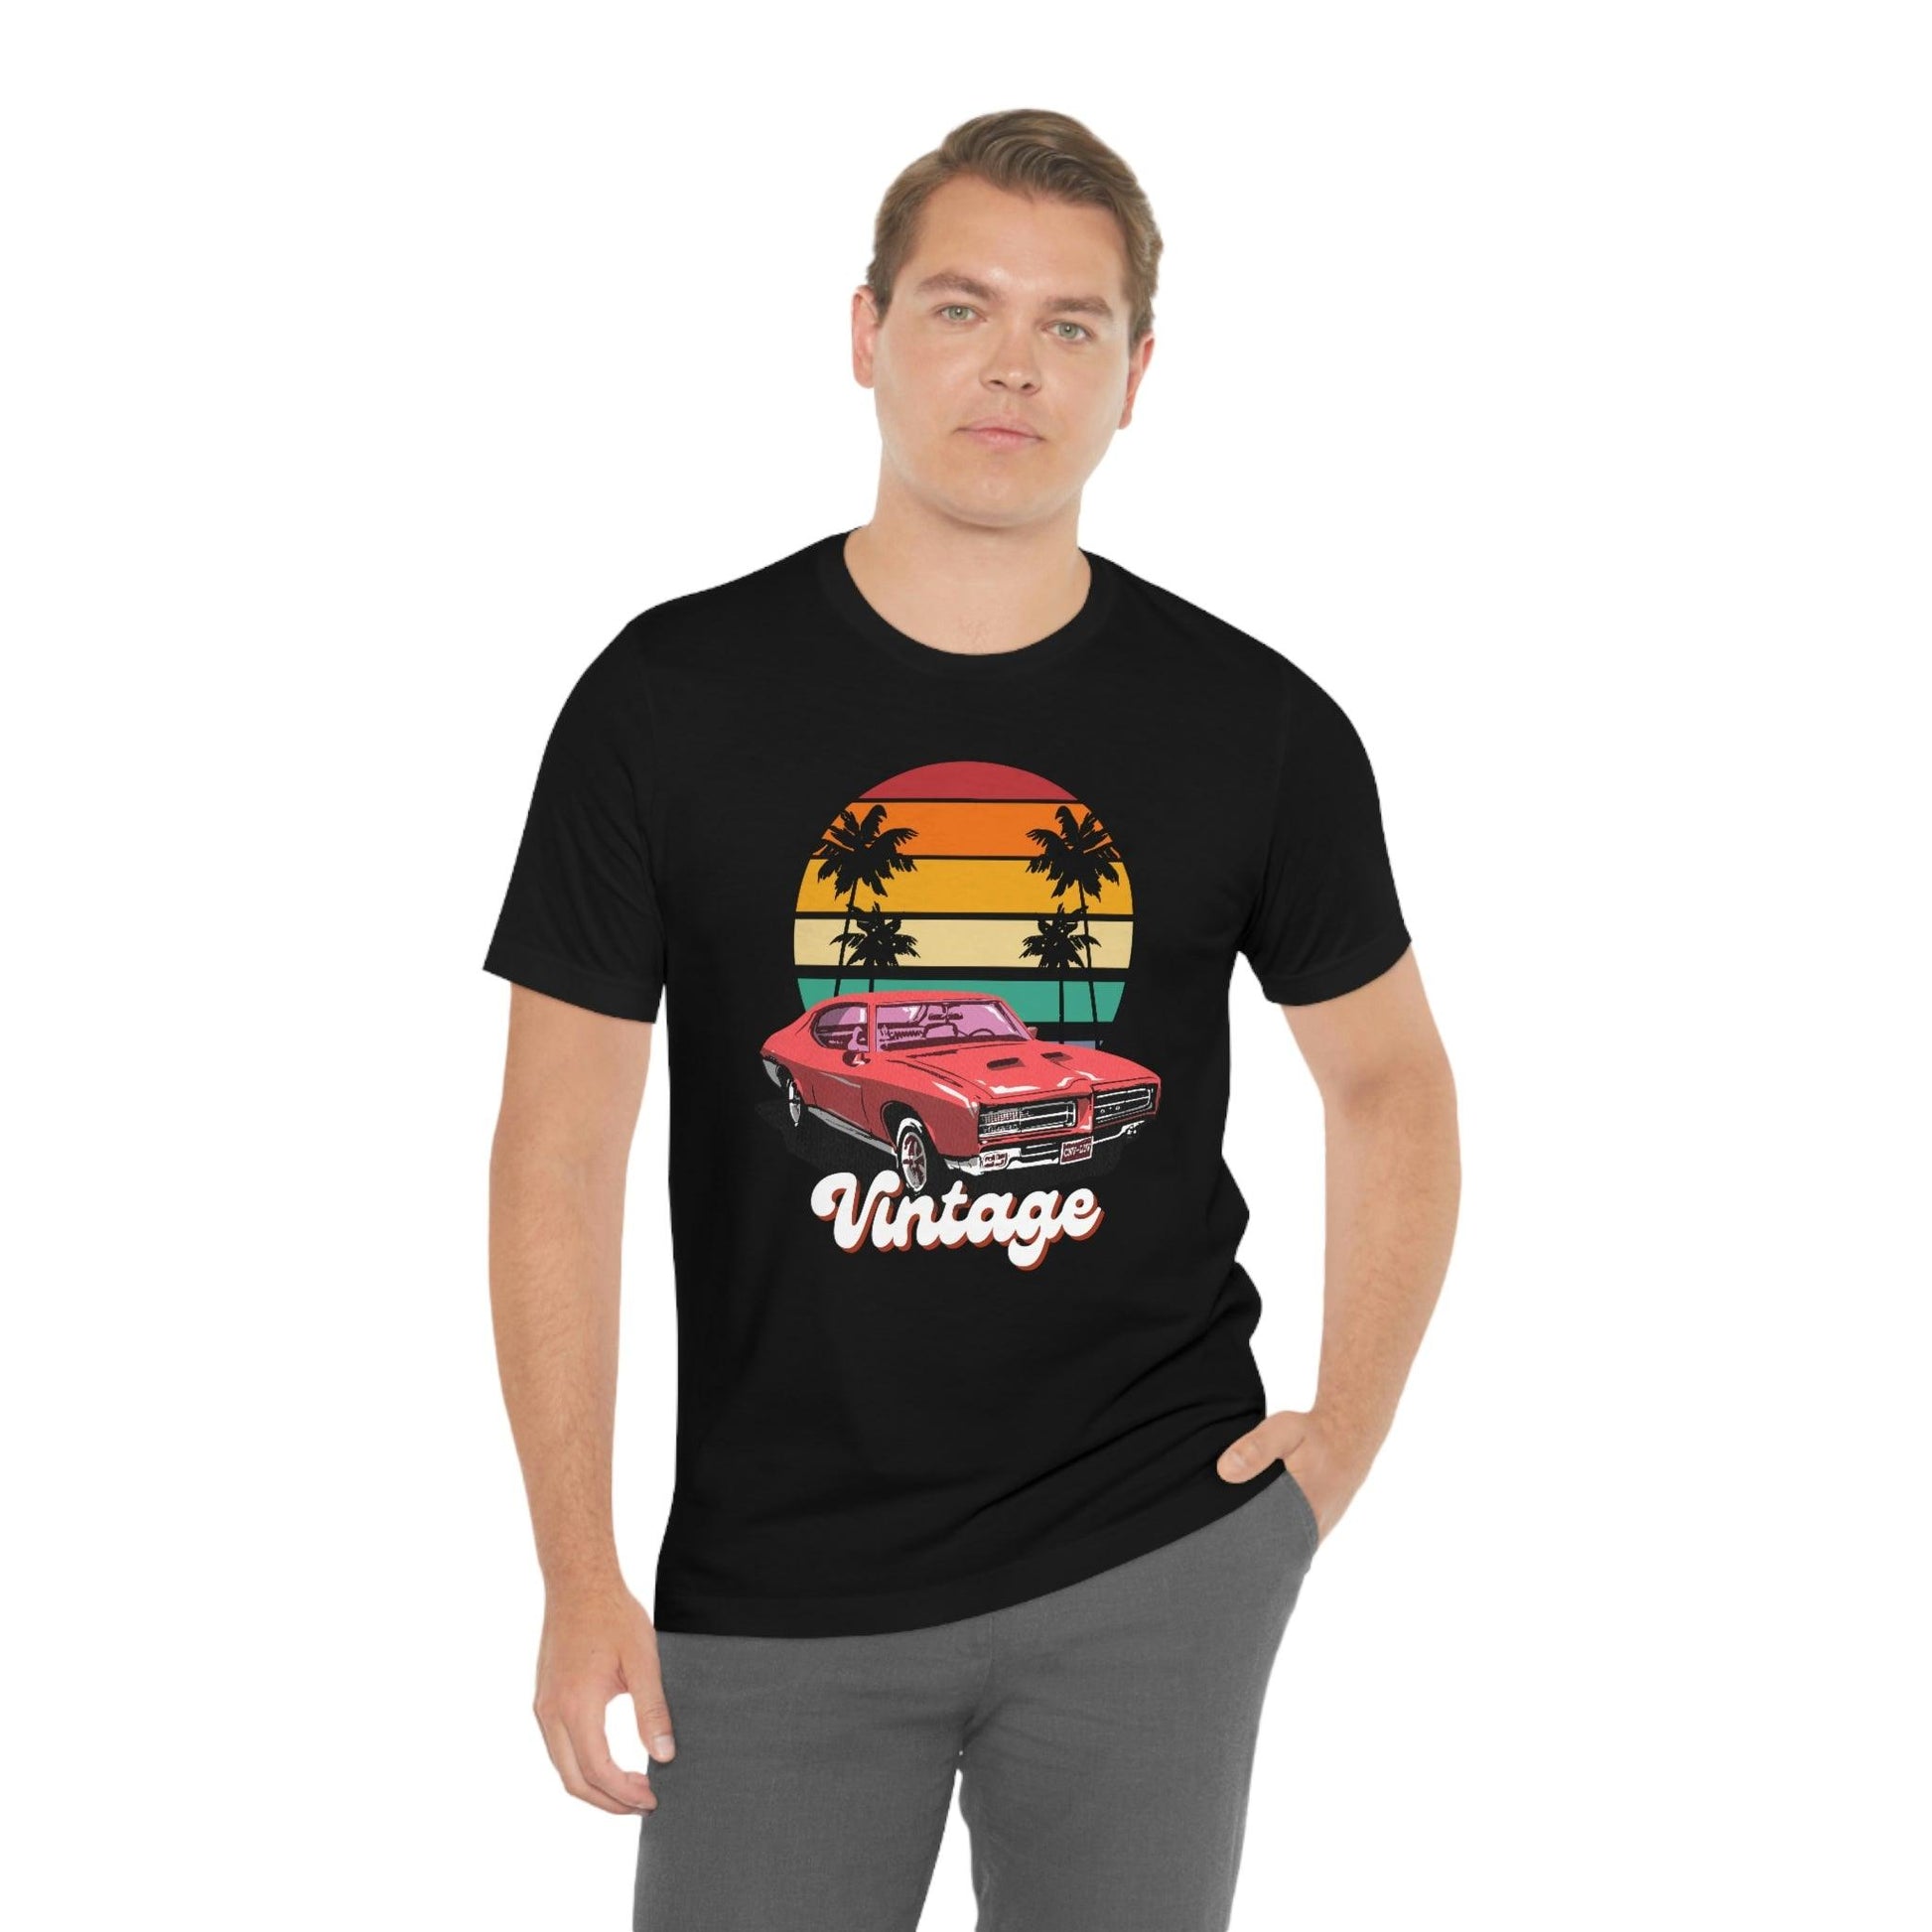 Vintage car tshirt - Vintage car shirt classic car shirt muscle car shirt, car shirt, gifts for car lovers, - Giftsmojo